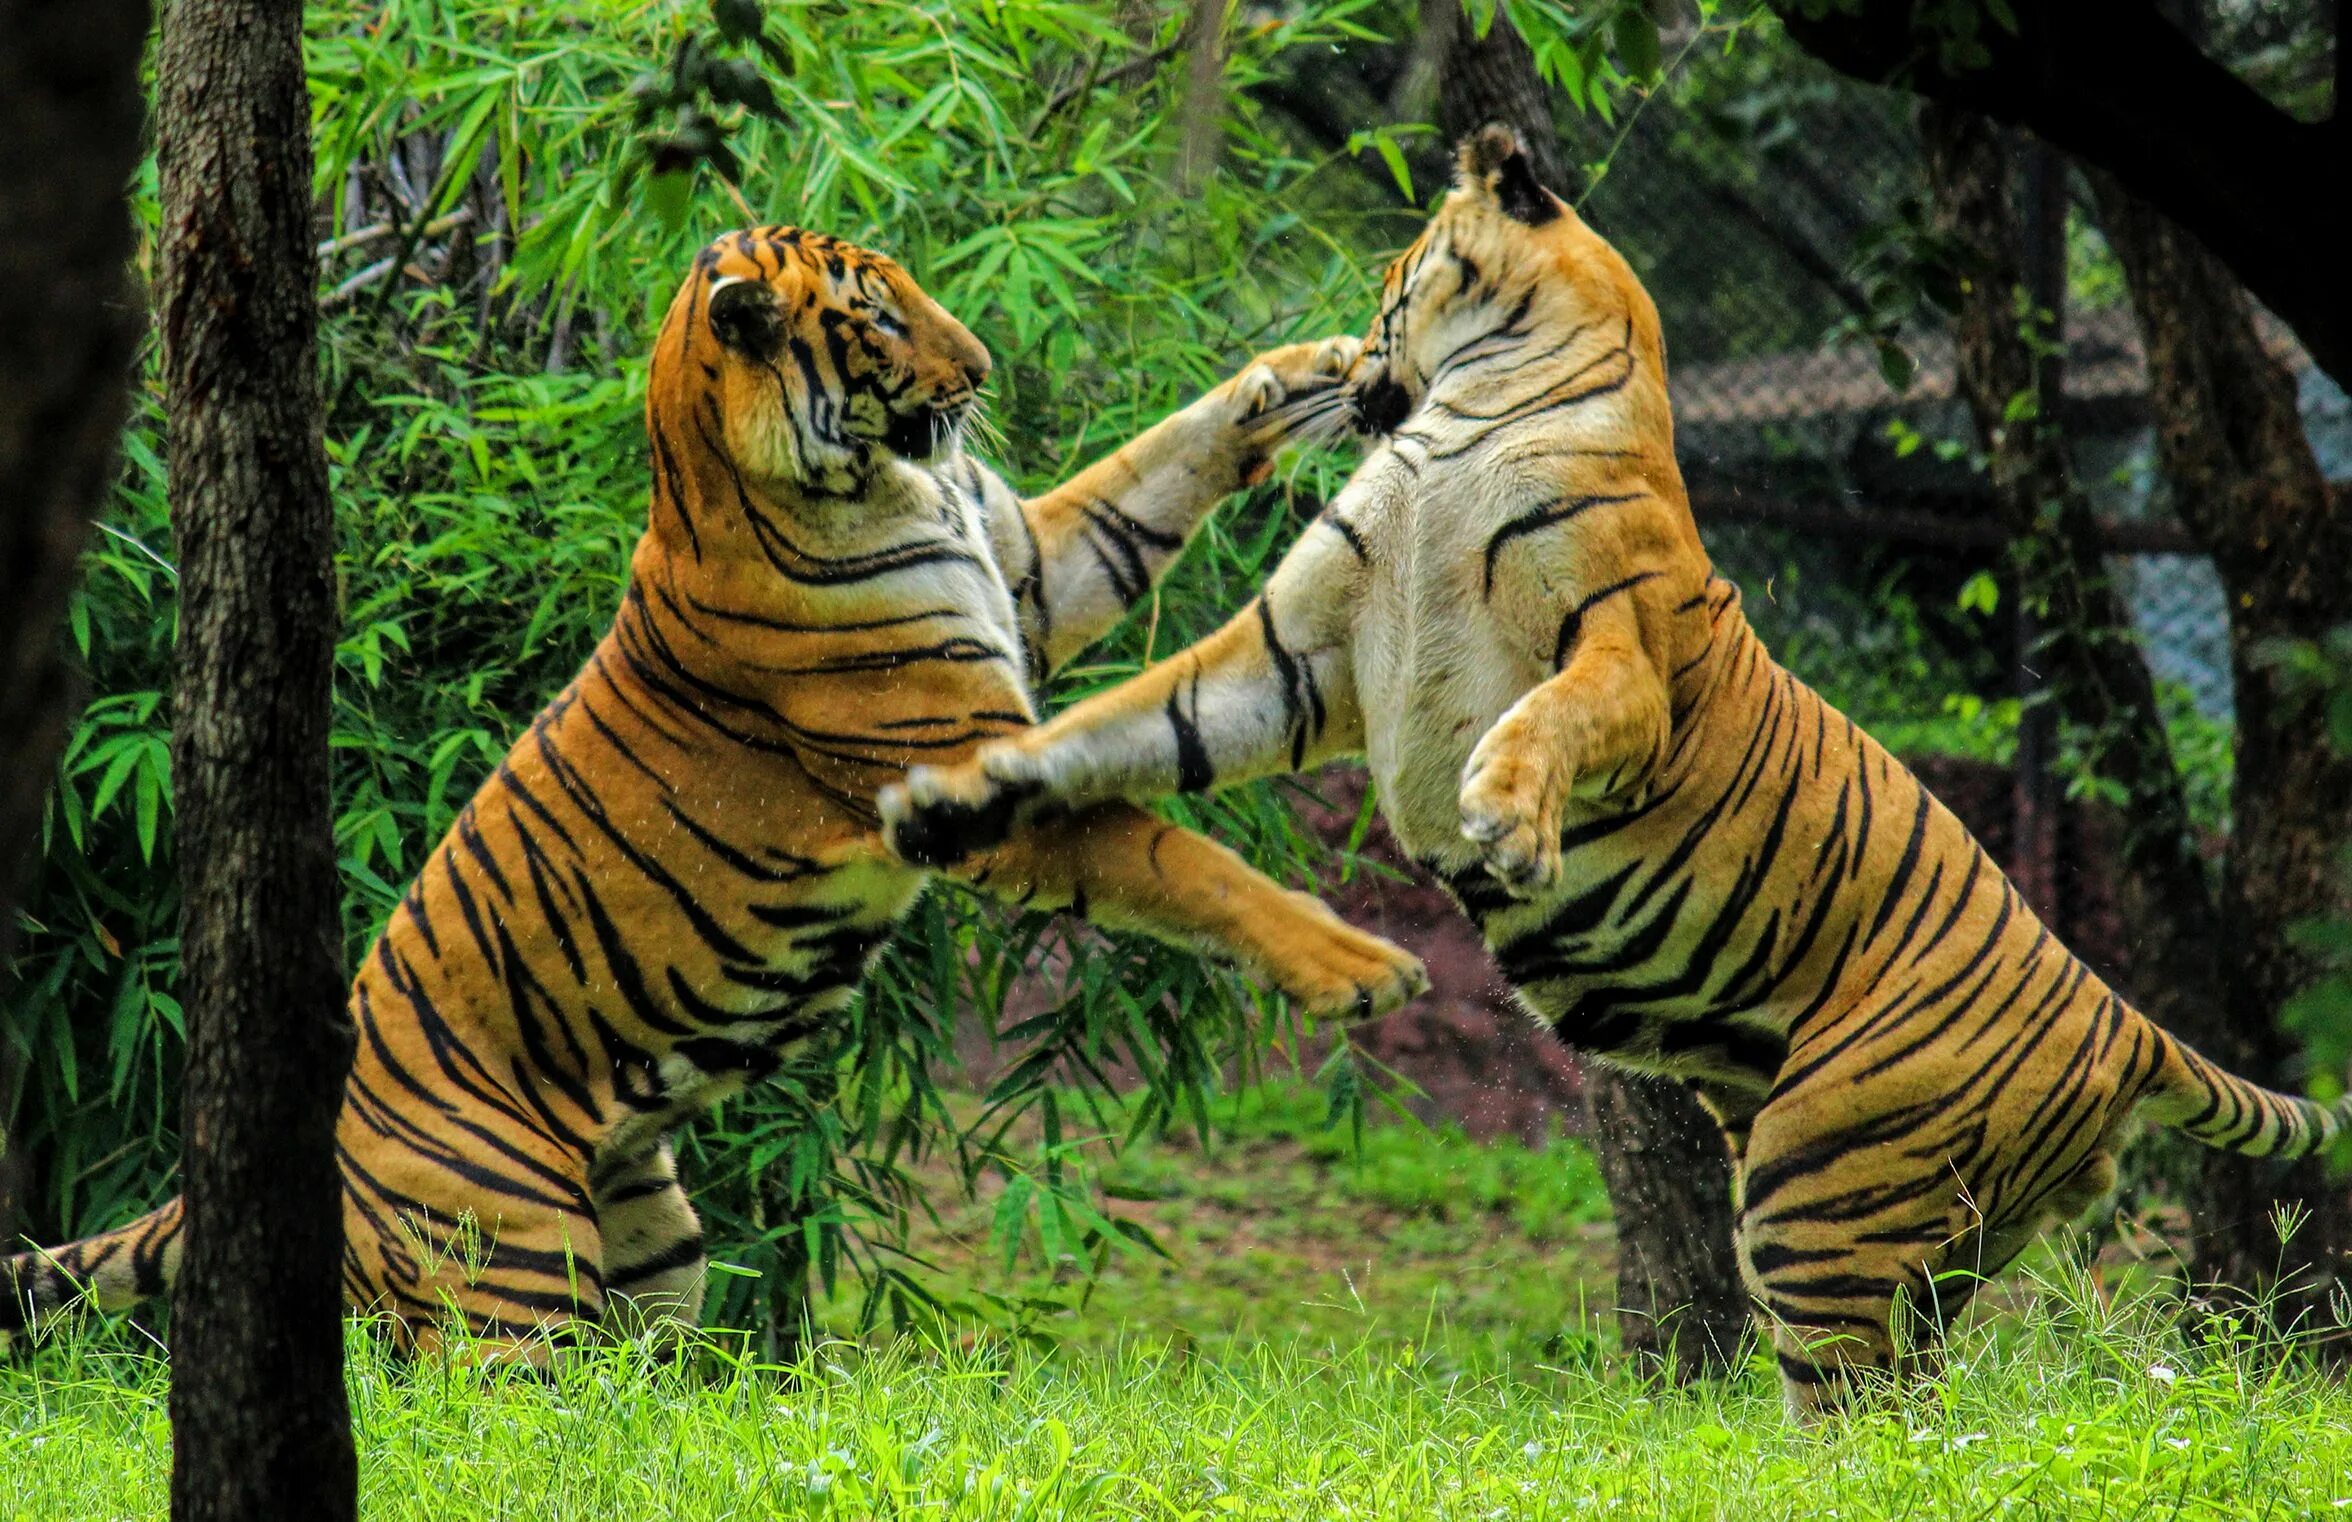 Бингал тигр. Бенгал Тайгер. Тигры дерутся. Тигр Fight.